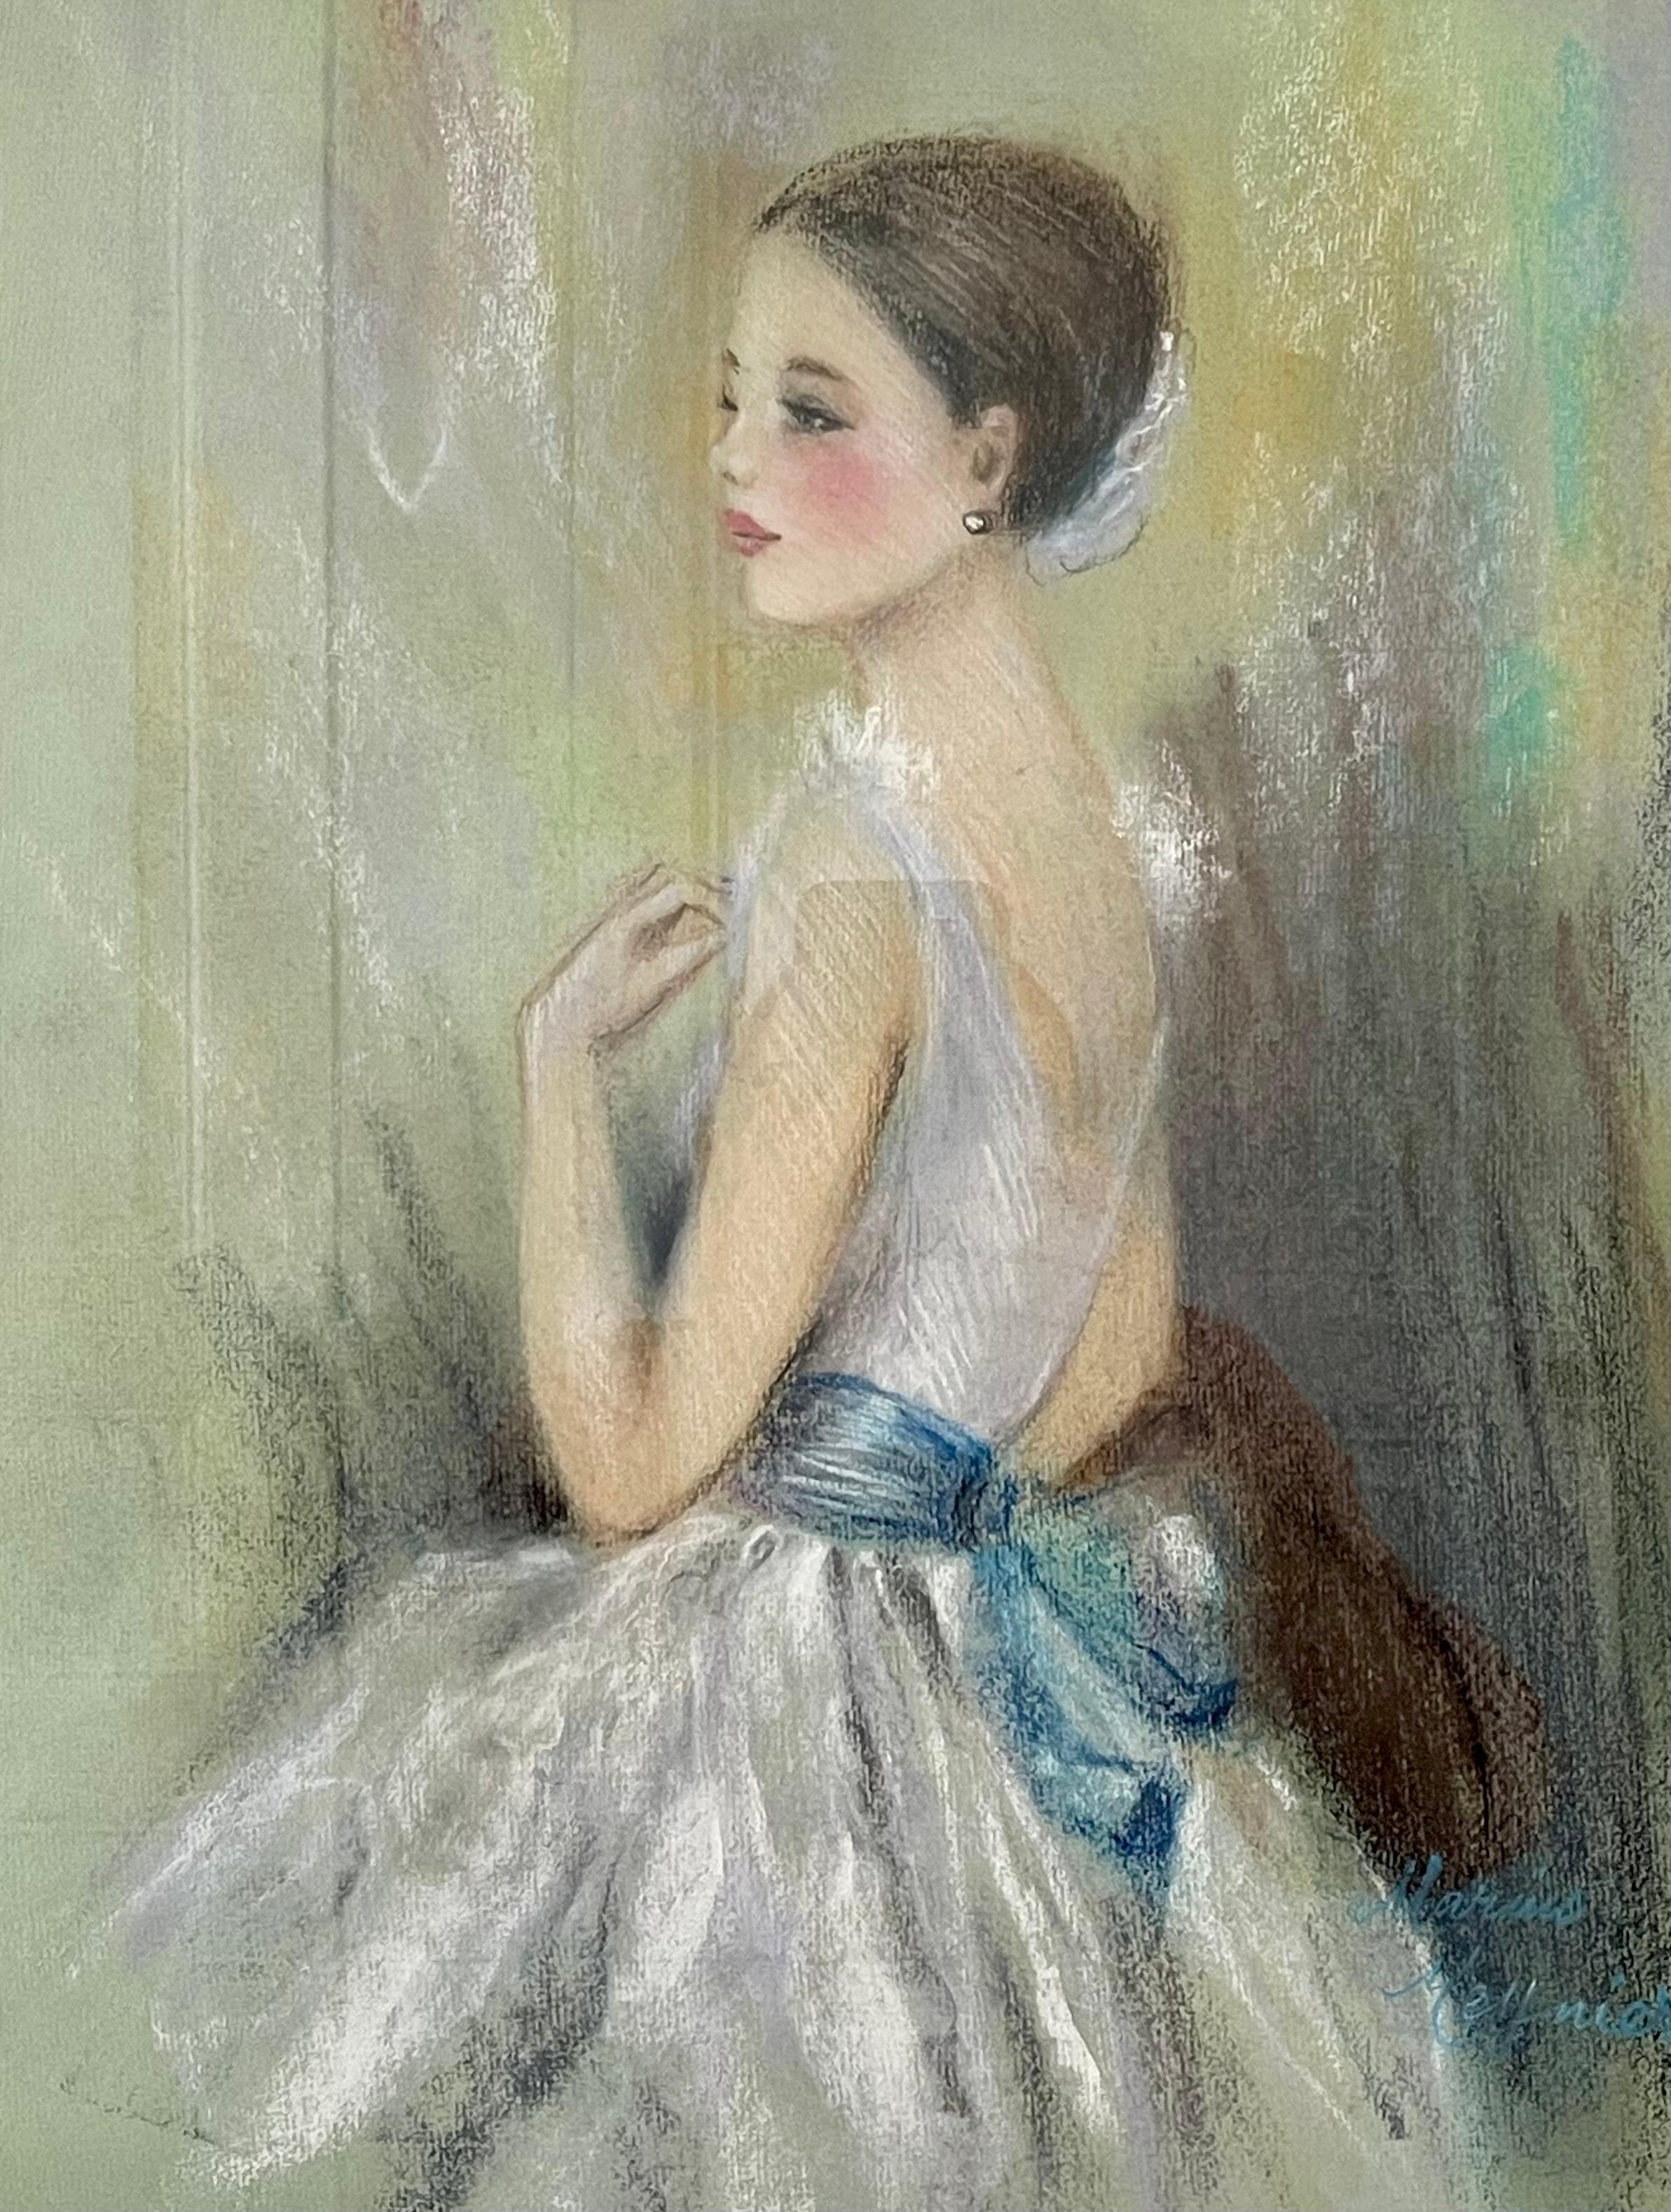 Ce magnifique tableau encadré de Meynier représente une danseuse brune vêtue d'un costume de ballet composé d'un justaucorps blanc et d'un tutu orné d'une ceinture bleue. La danseuse est représentée de profil, regardant vers la gauche, avec sa main